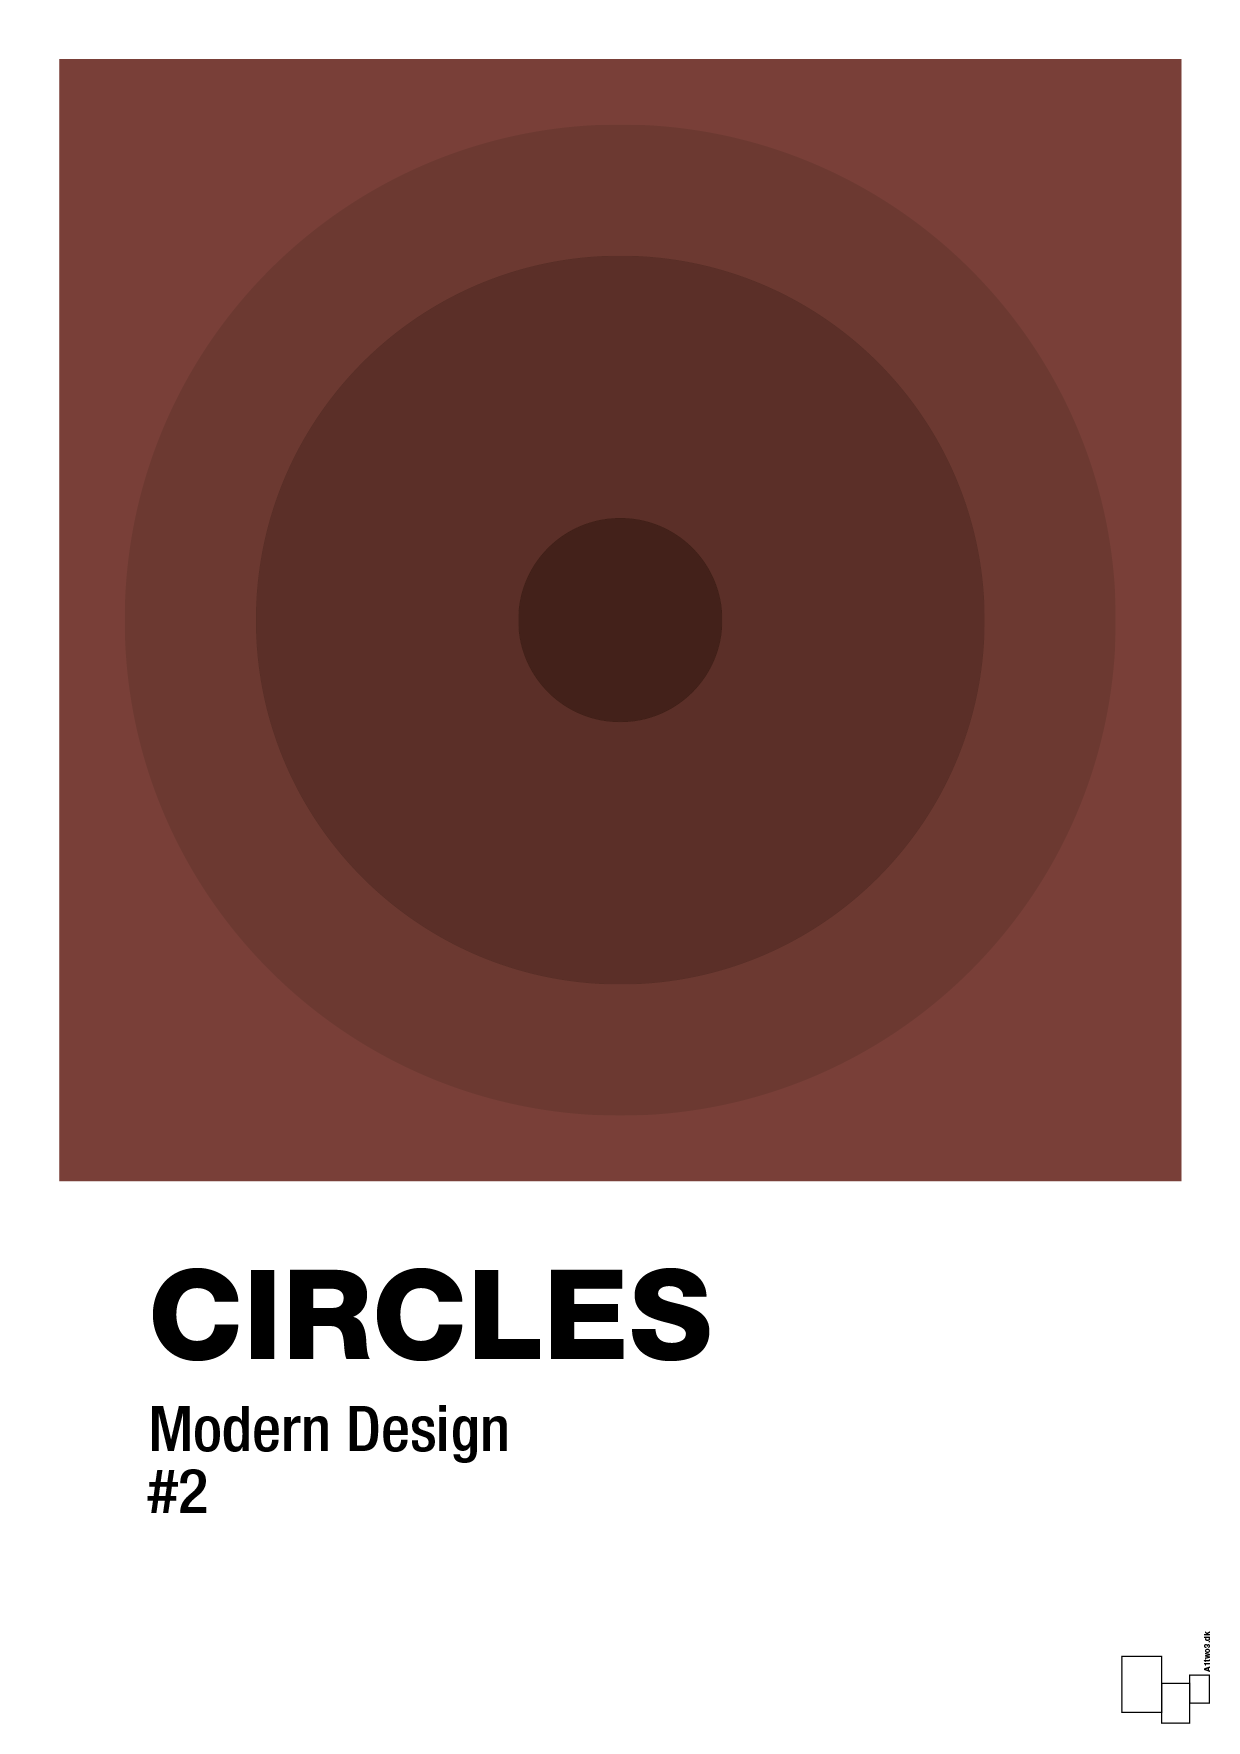 circles #2 - Plakat med Grafik i Red Pepper